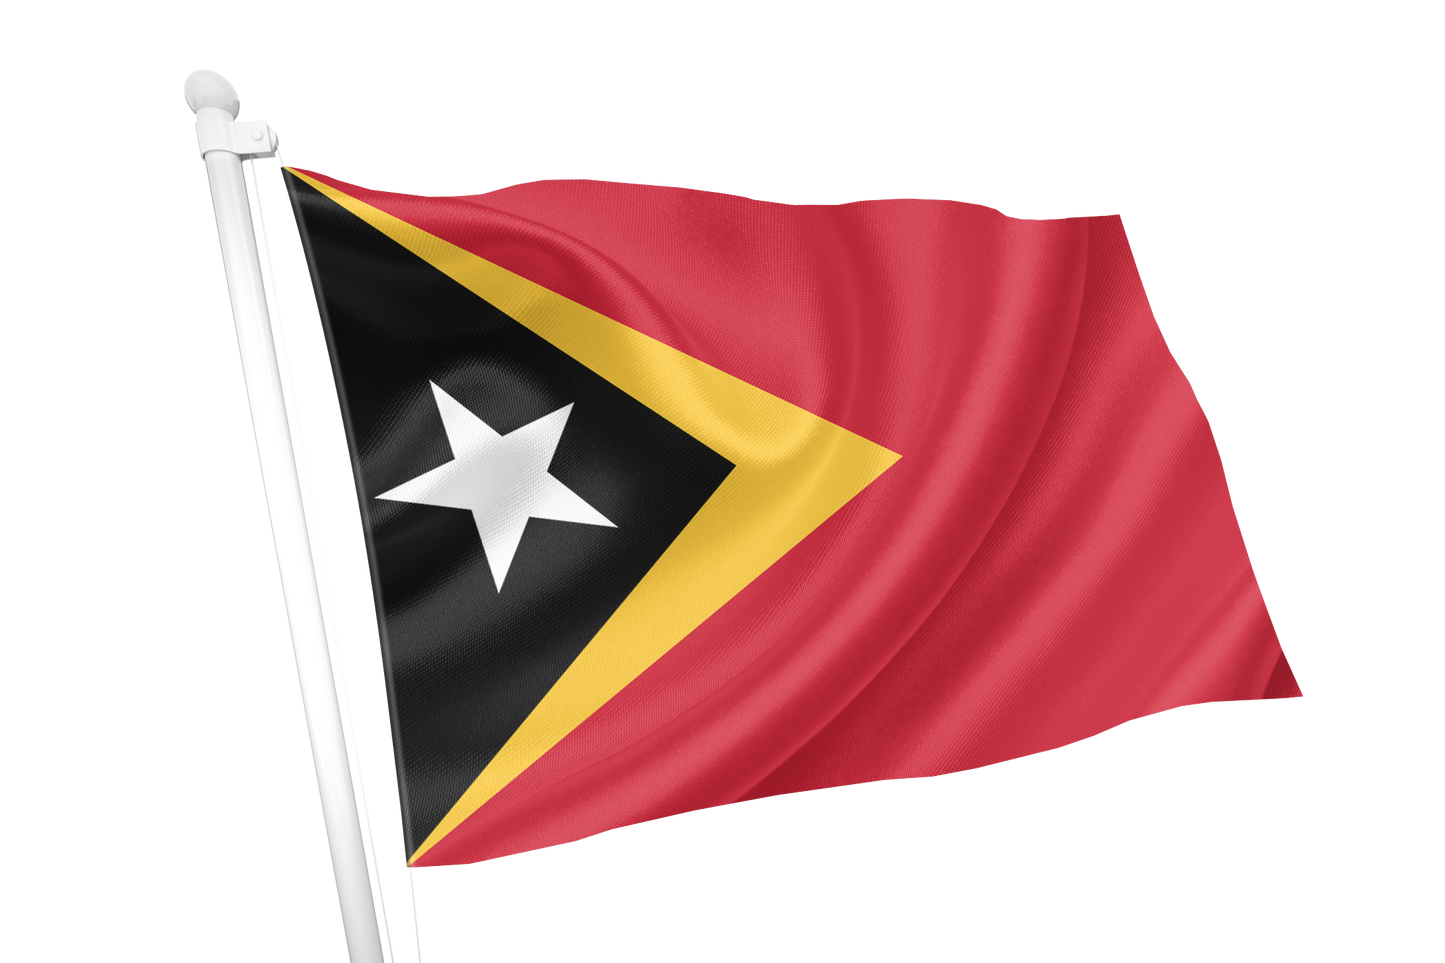 Timor-Leste(East Timor) Flag